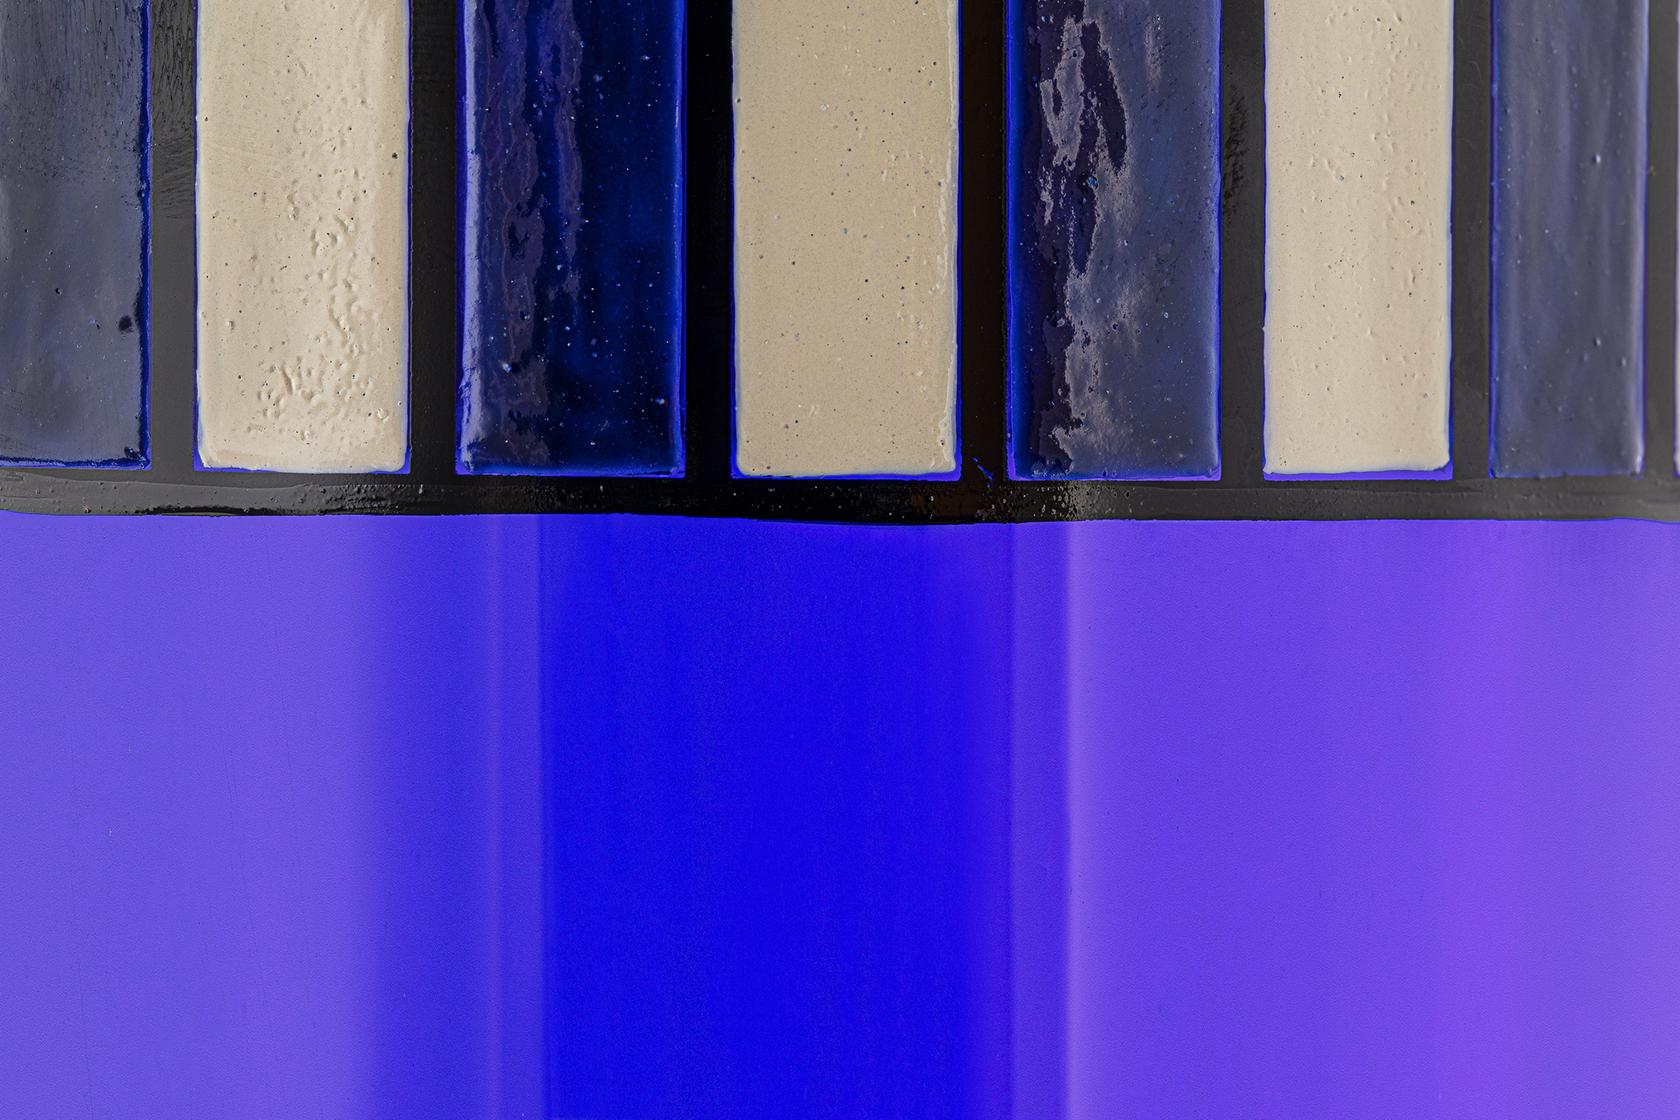 Collezione di vasi in vetro di Murano e smalto, in tre varianti di colore. Il particolare spessore della decorazione a smalto sulla superficie del vetro si ispira a una tecnica francese in voga negli anni '20, che si ritrova in alcuni pezzi iconici